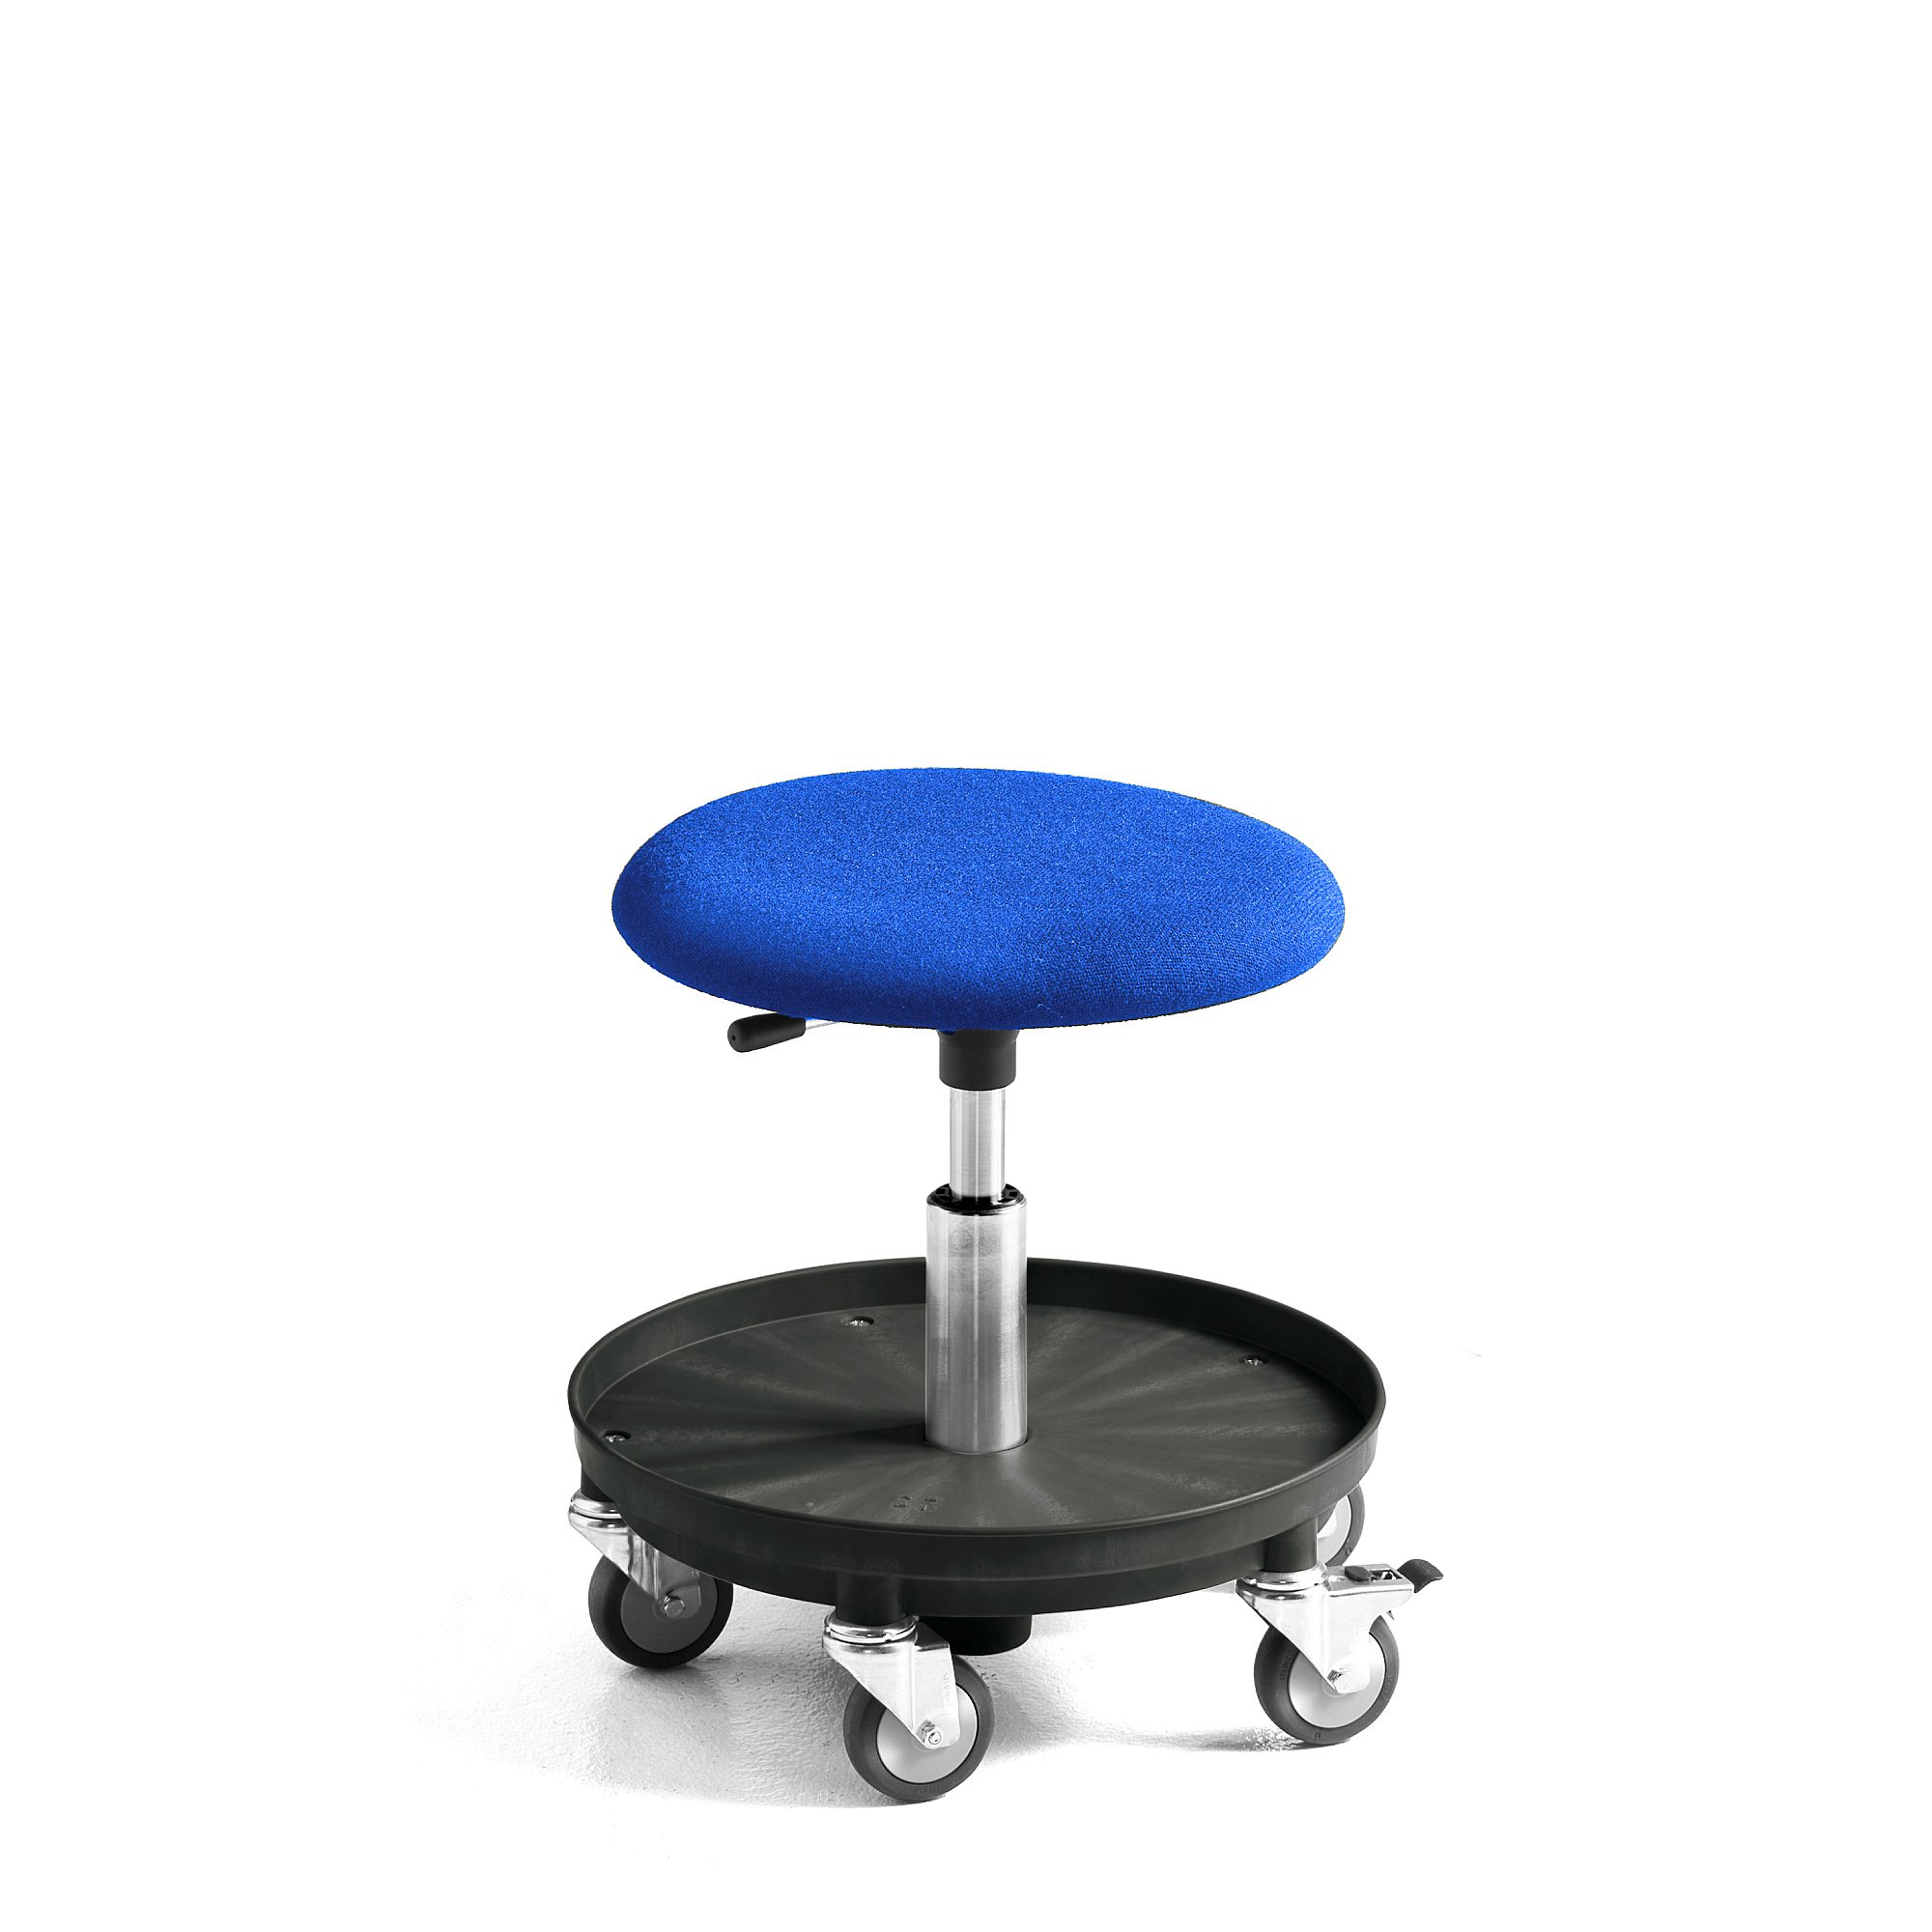 Pracovní stolička MIDI, 370-500 mm, čalouněný sedák, modrá